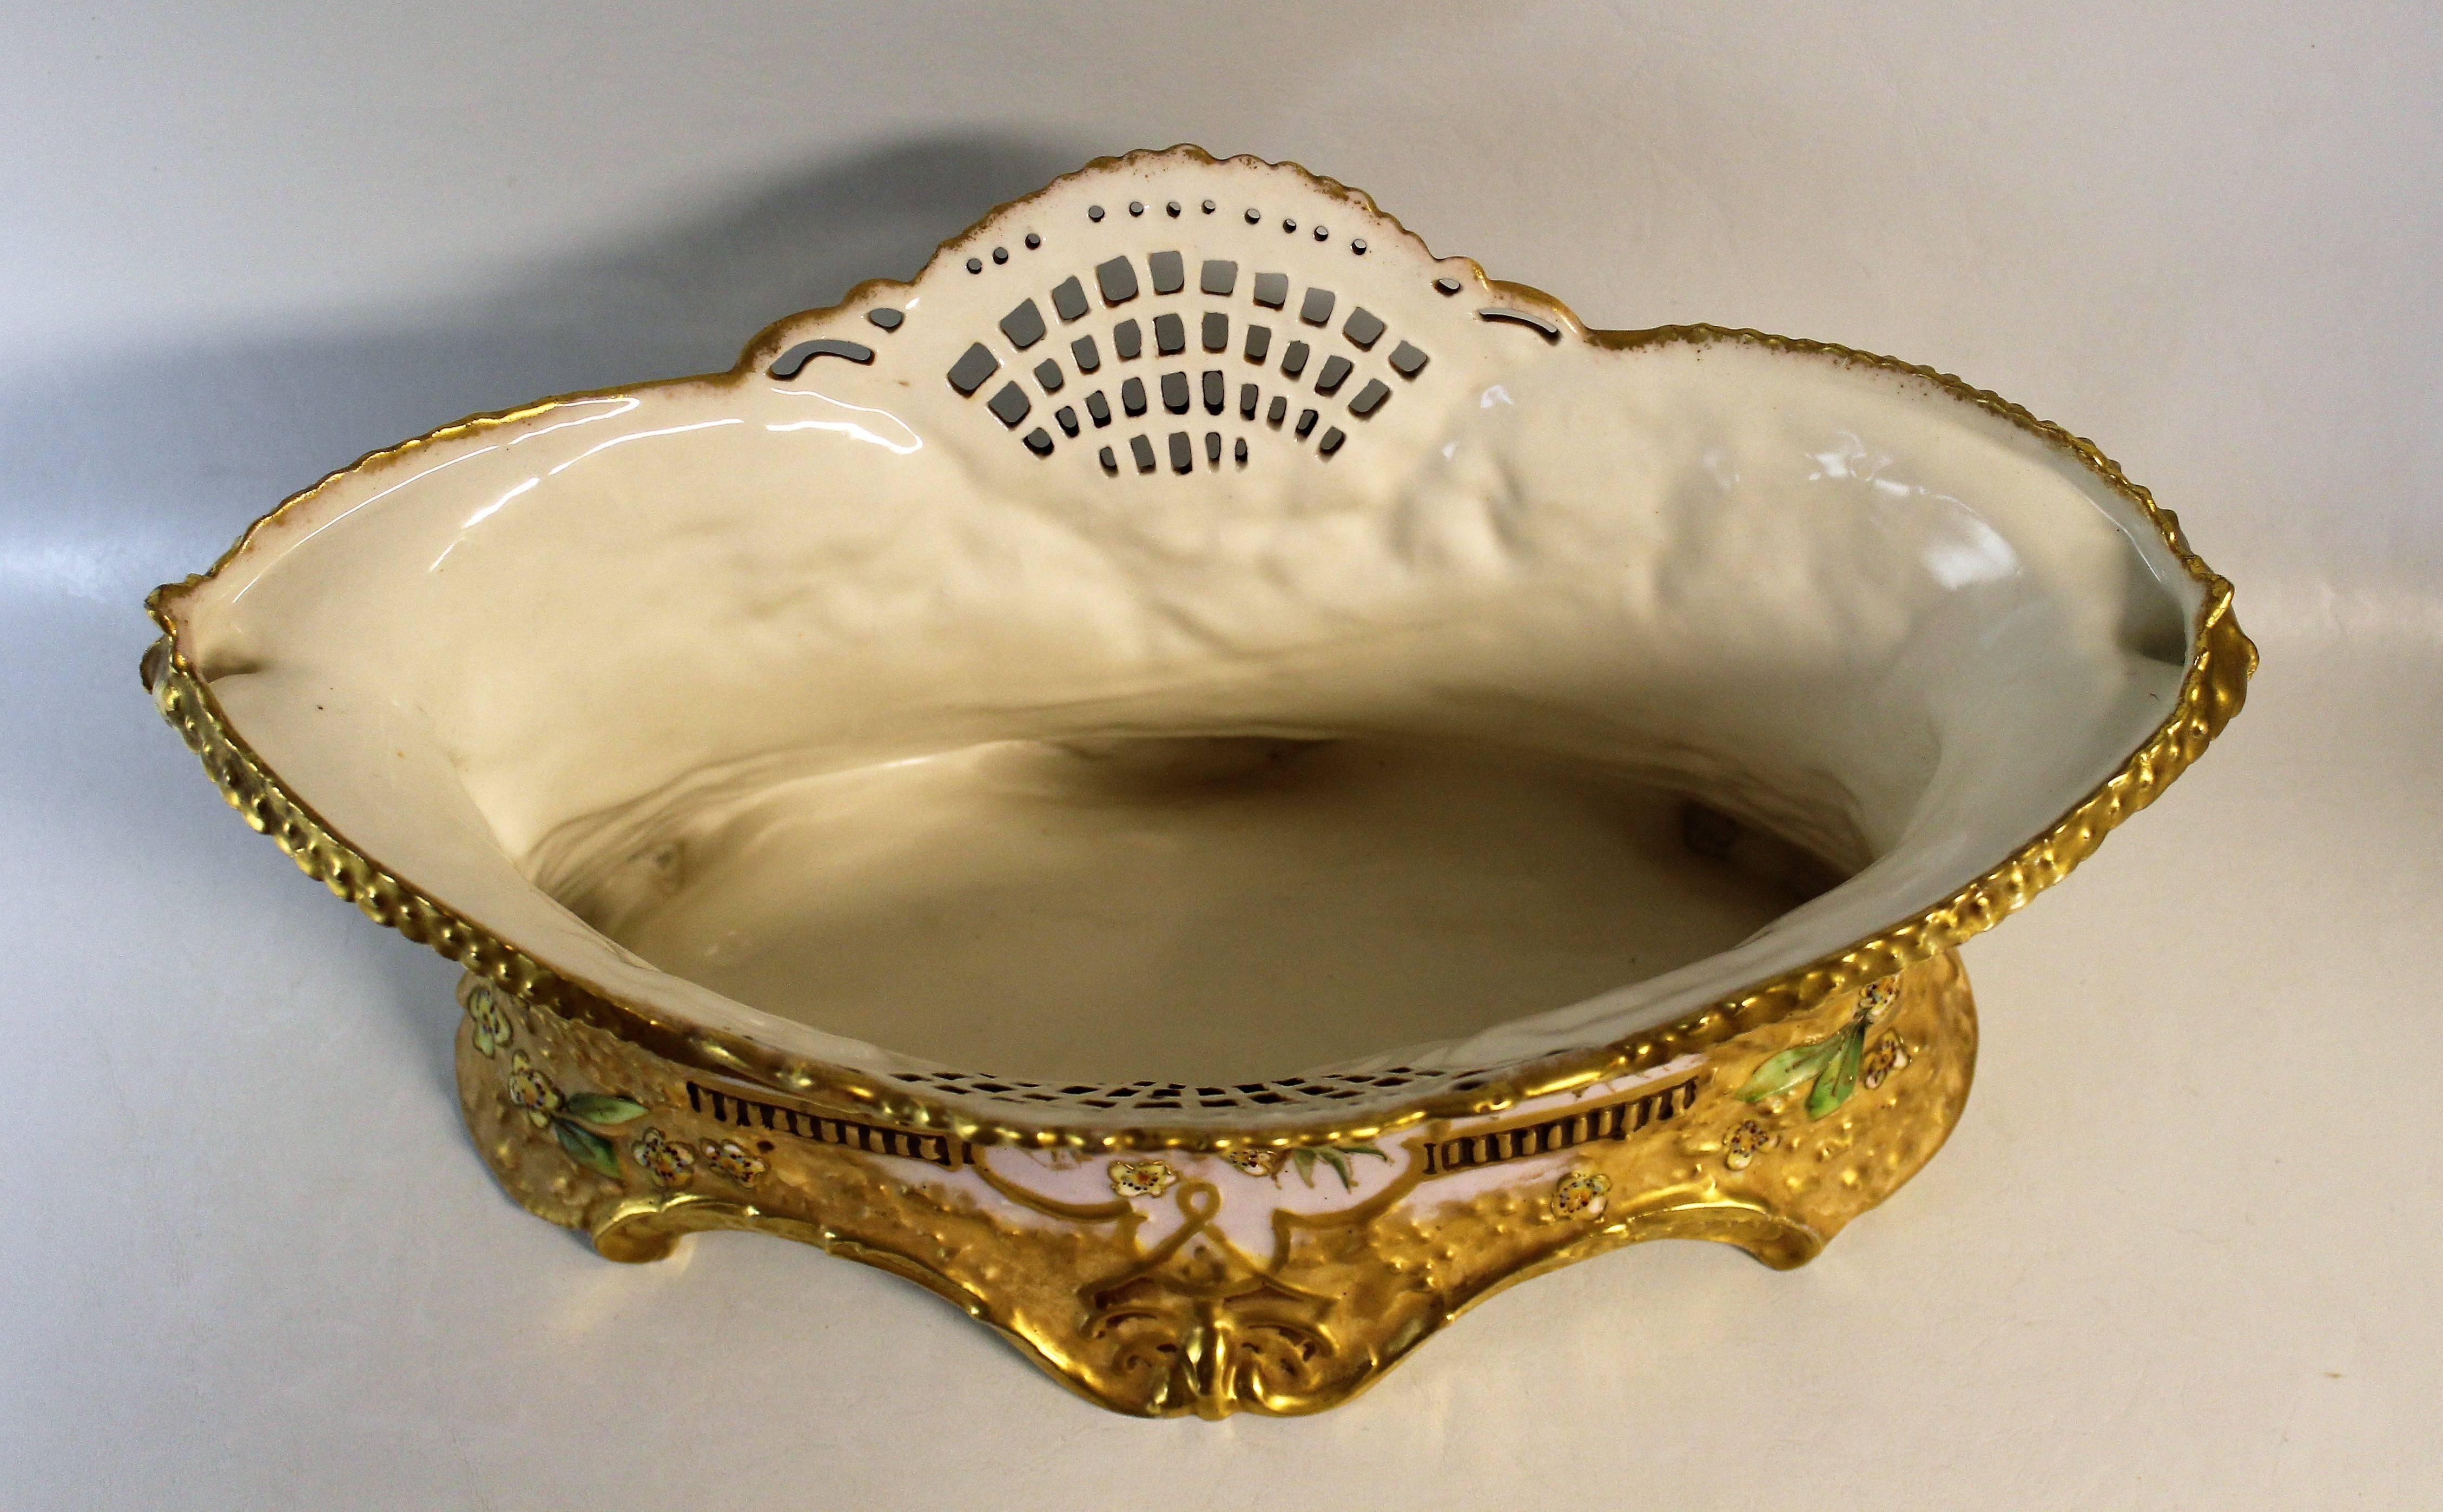 20th Century Ernst Wahliss Teplitz Depose Porcelain Jardiniere Vase or Centerpiece Bowl